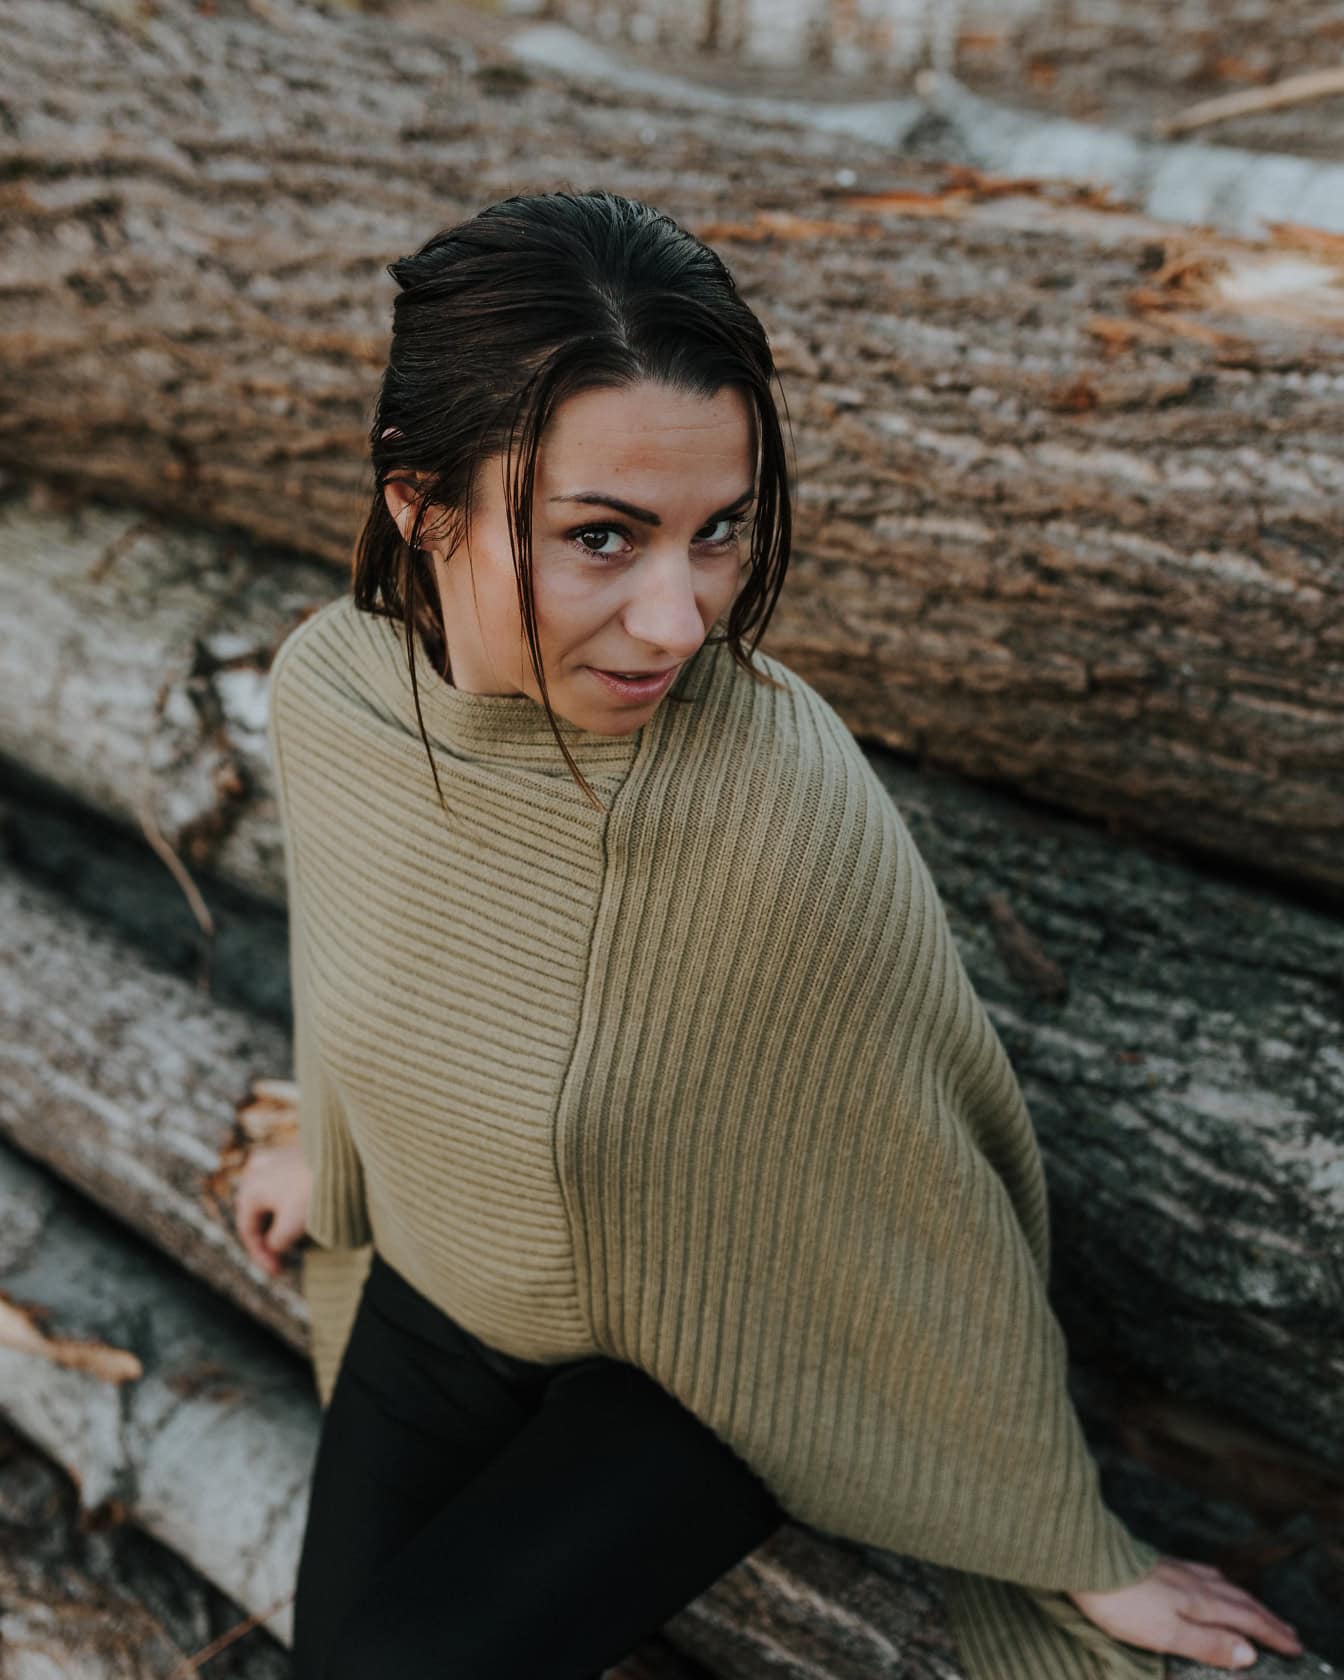 Porträt einer gutaussehenden Brünetten in einem handgestrickten Pullover, während sie an Baumstämme gelehnt posiert